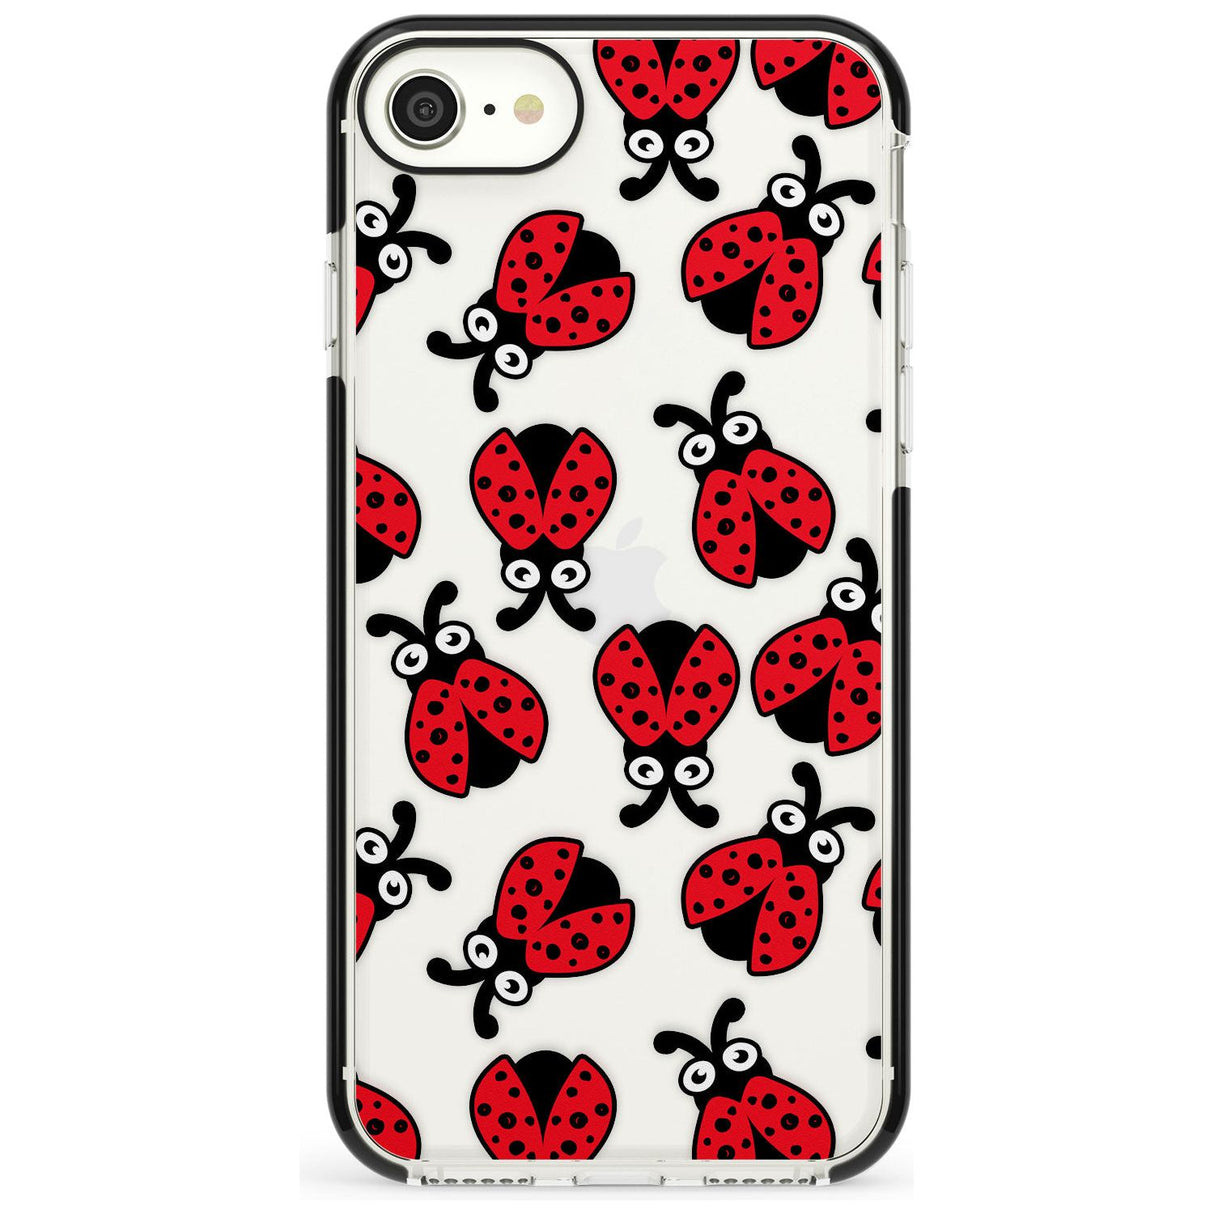 Ladybug Pattern Phone Case for iPhone SE